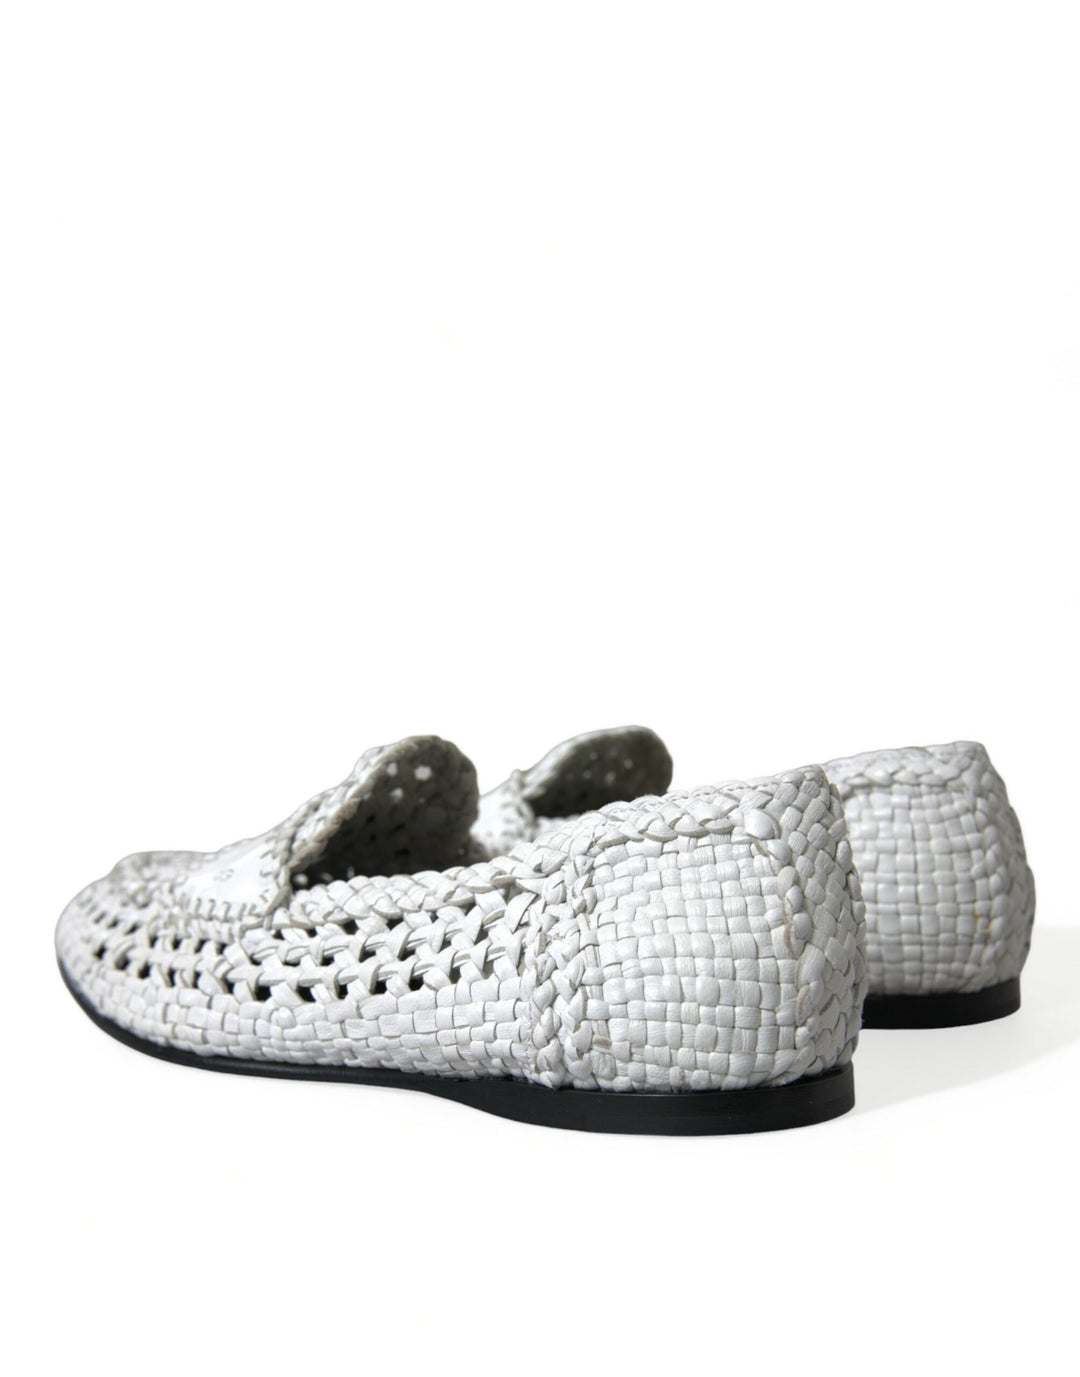 Dolce & Gabbana Elegant White Loafer Slip-Ons